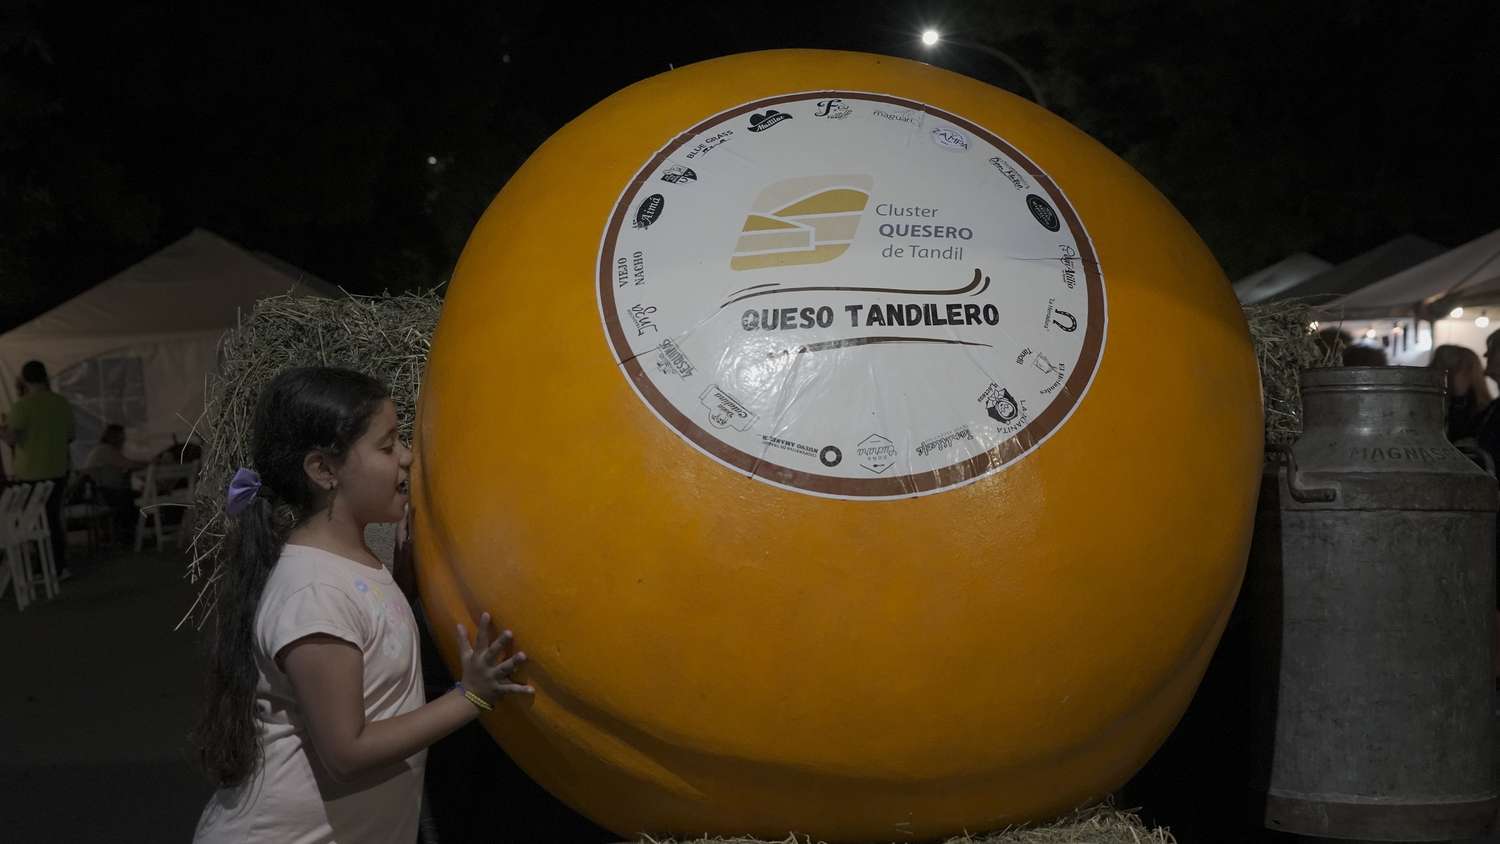 El Clúster Quesero celebró una década trabajando por el queso de Tandil.